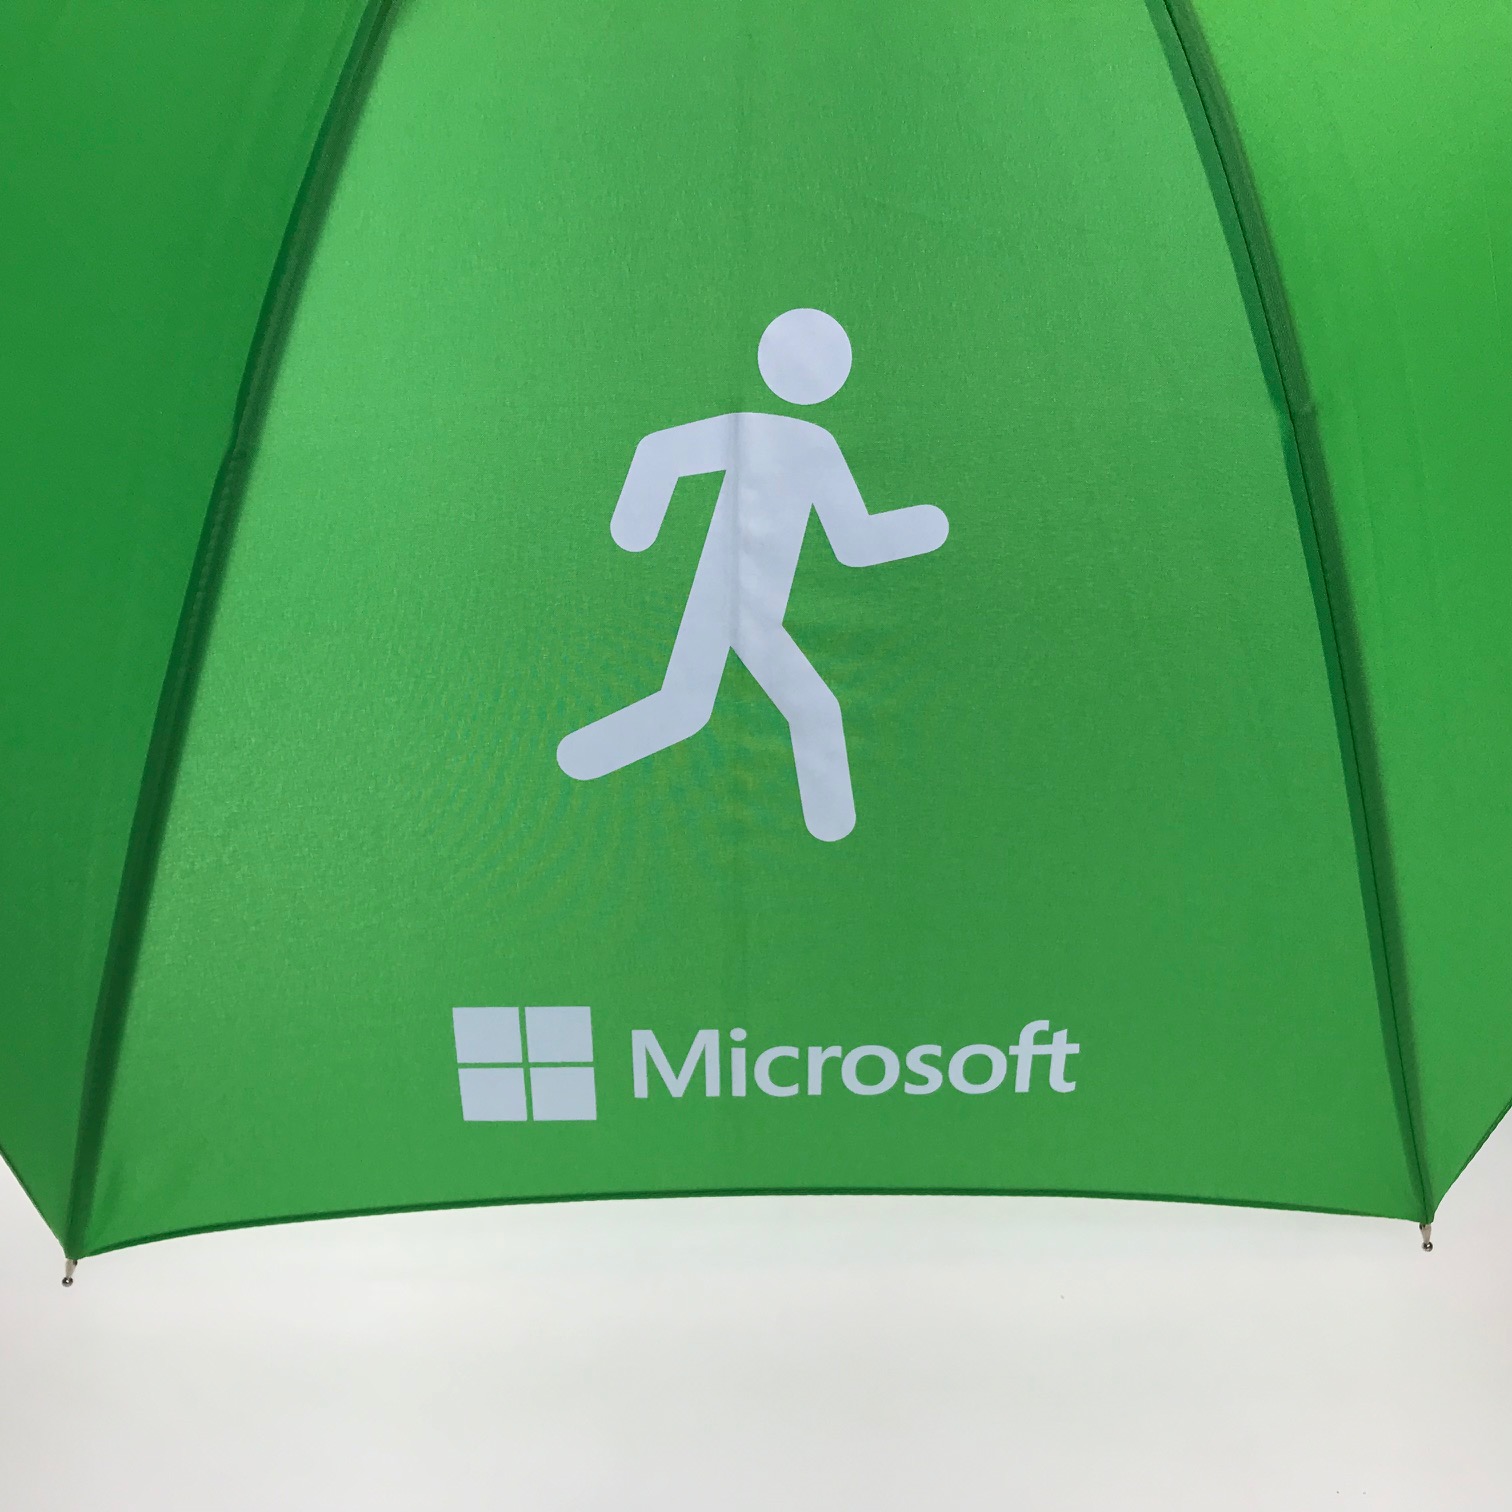 Logo size on umbrellas